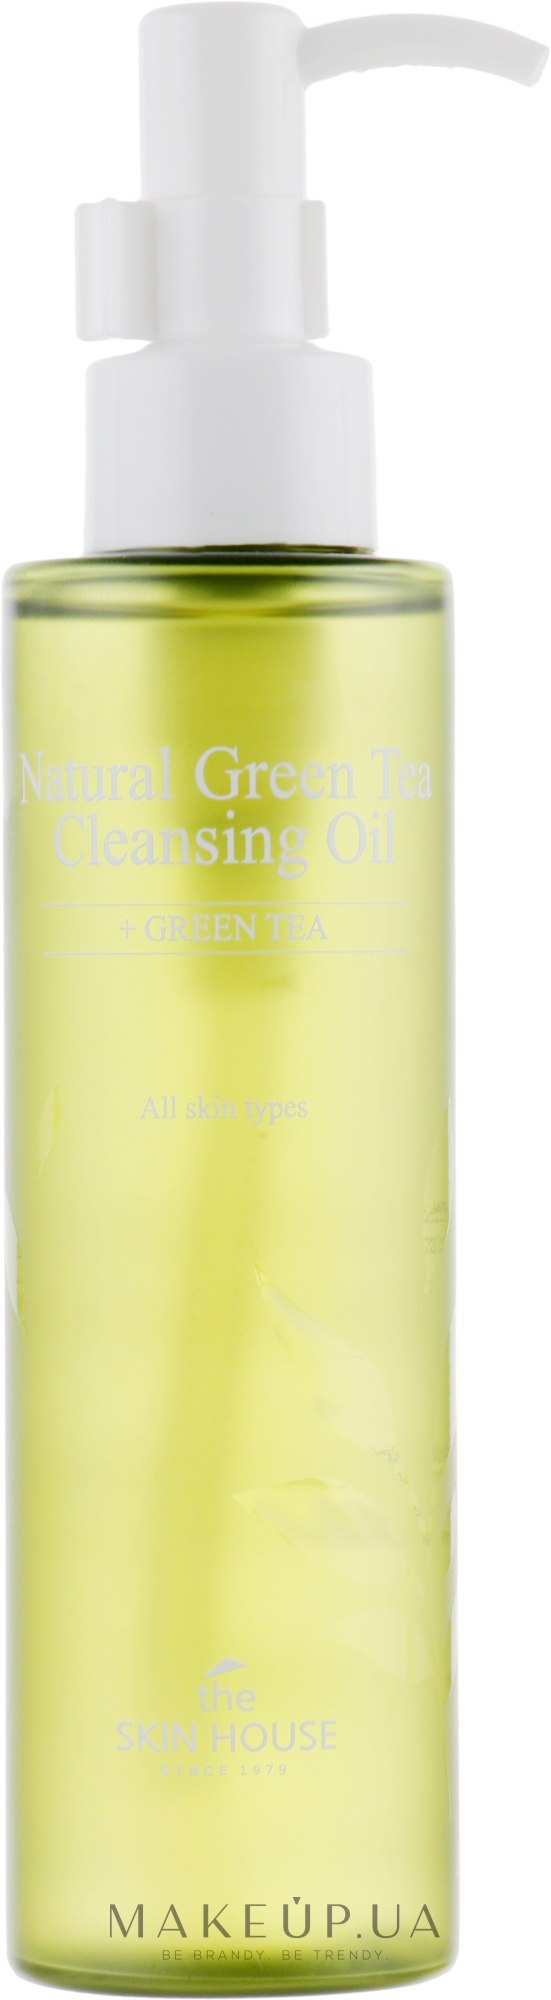 Гідрофільна олія з екстрактом зеленого чаю - The Skin House Natural Green Tea Cleansing Oil — фото 150ml